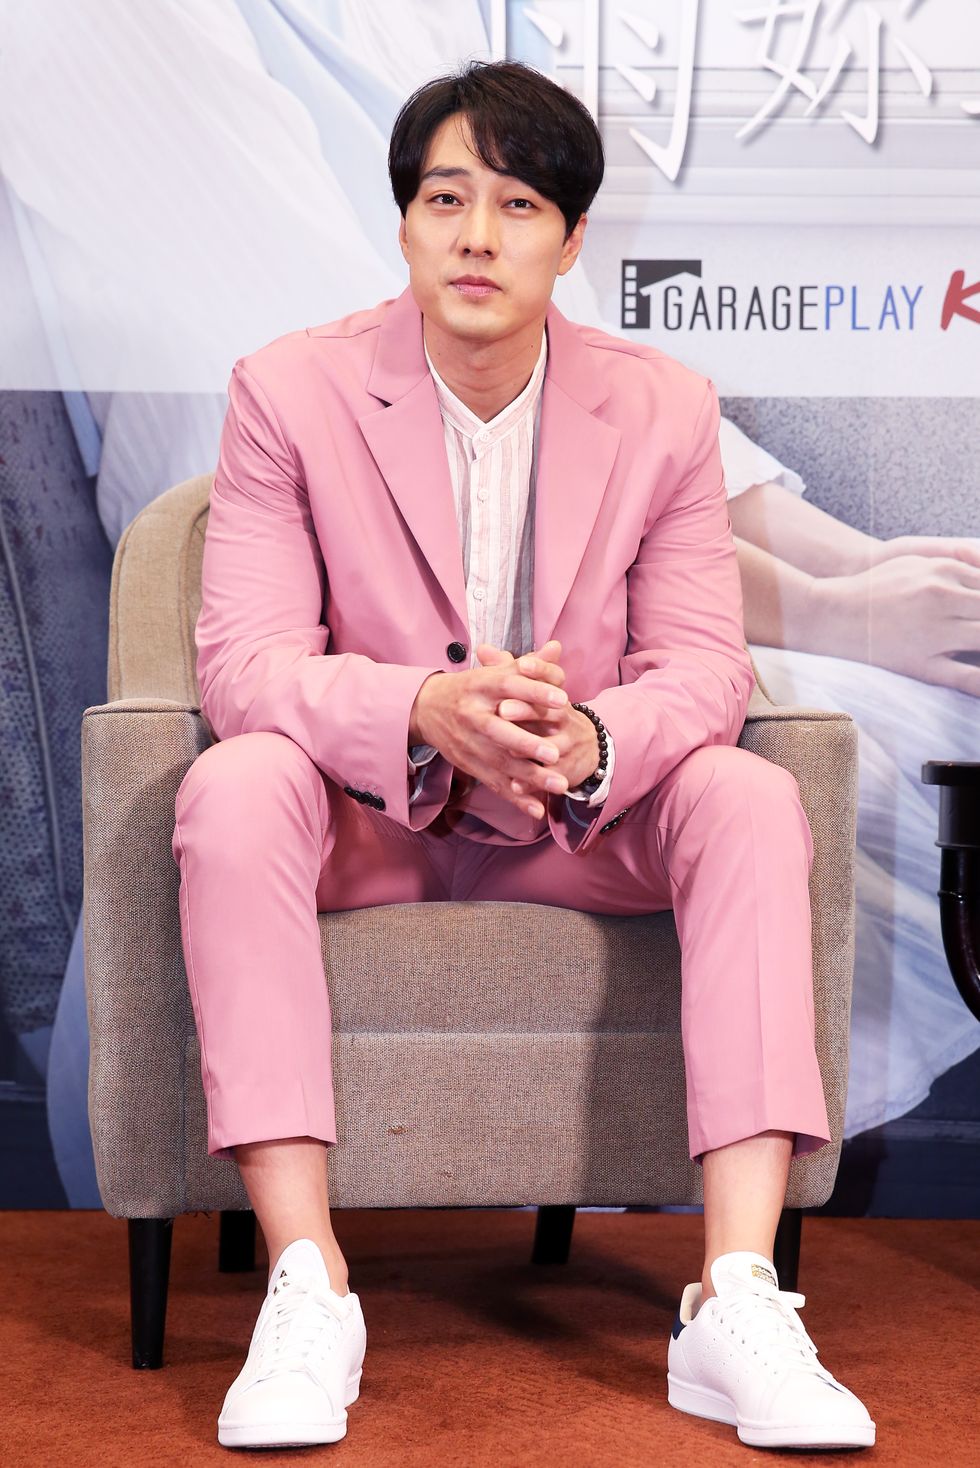 蘇志燮身穿粉紅色西裝出席台北首映會